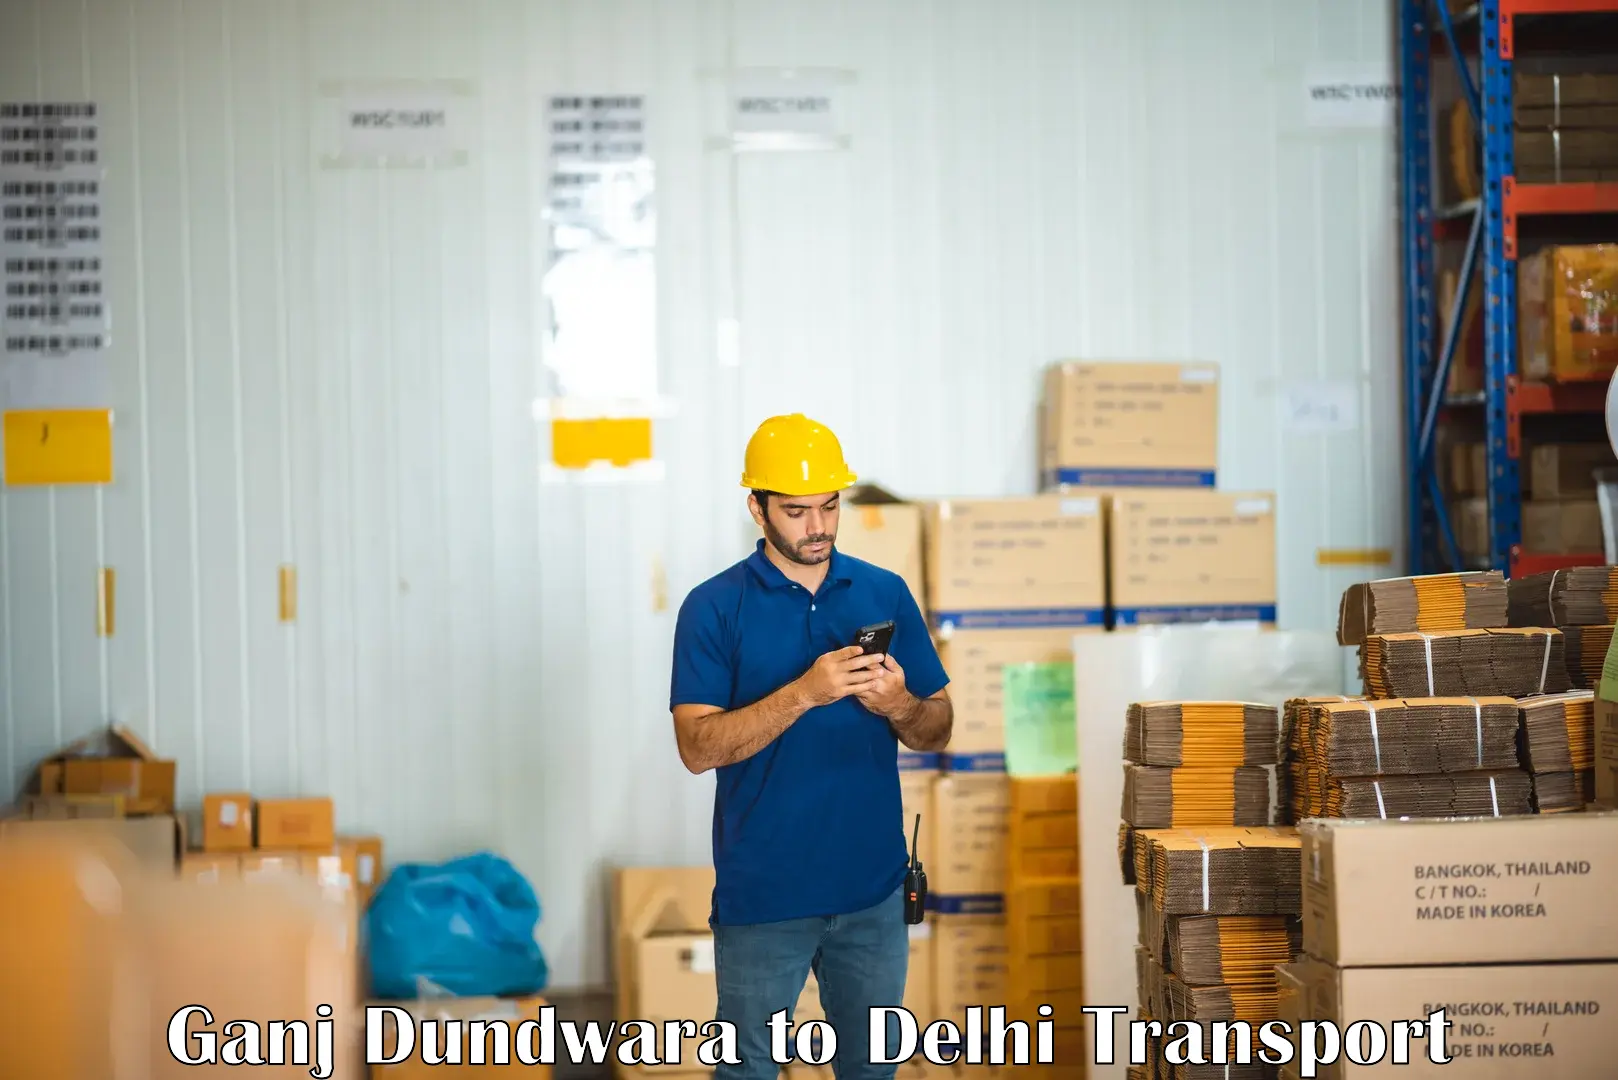 Pick up transport service Ganj Dundwara to Delhi